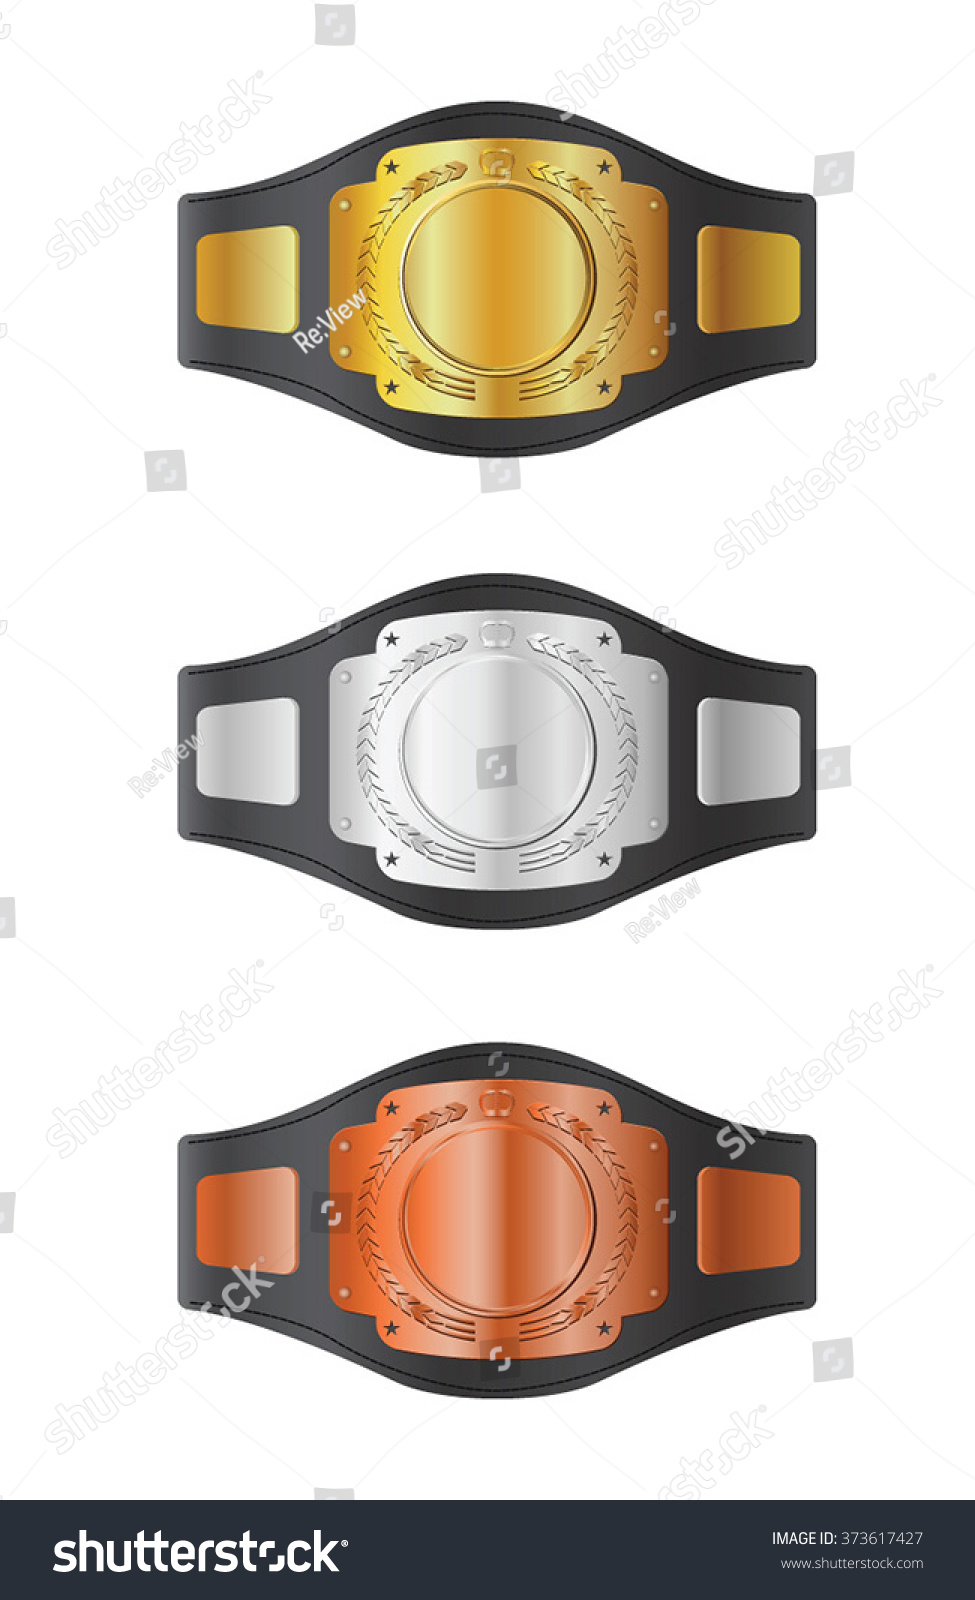 SVG of Vector illustration of boxing belts. svg